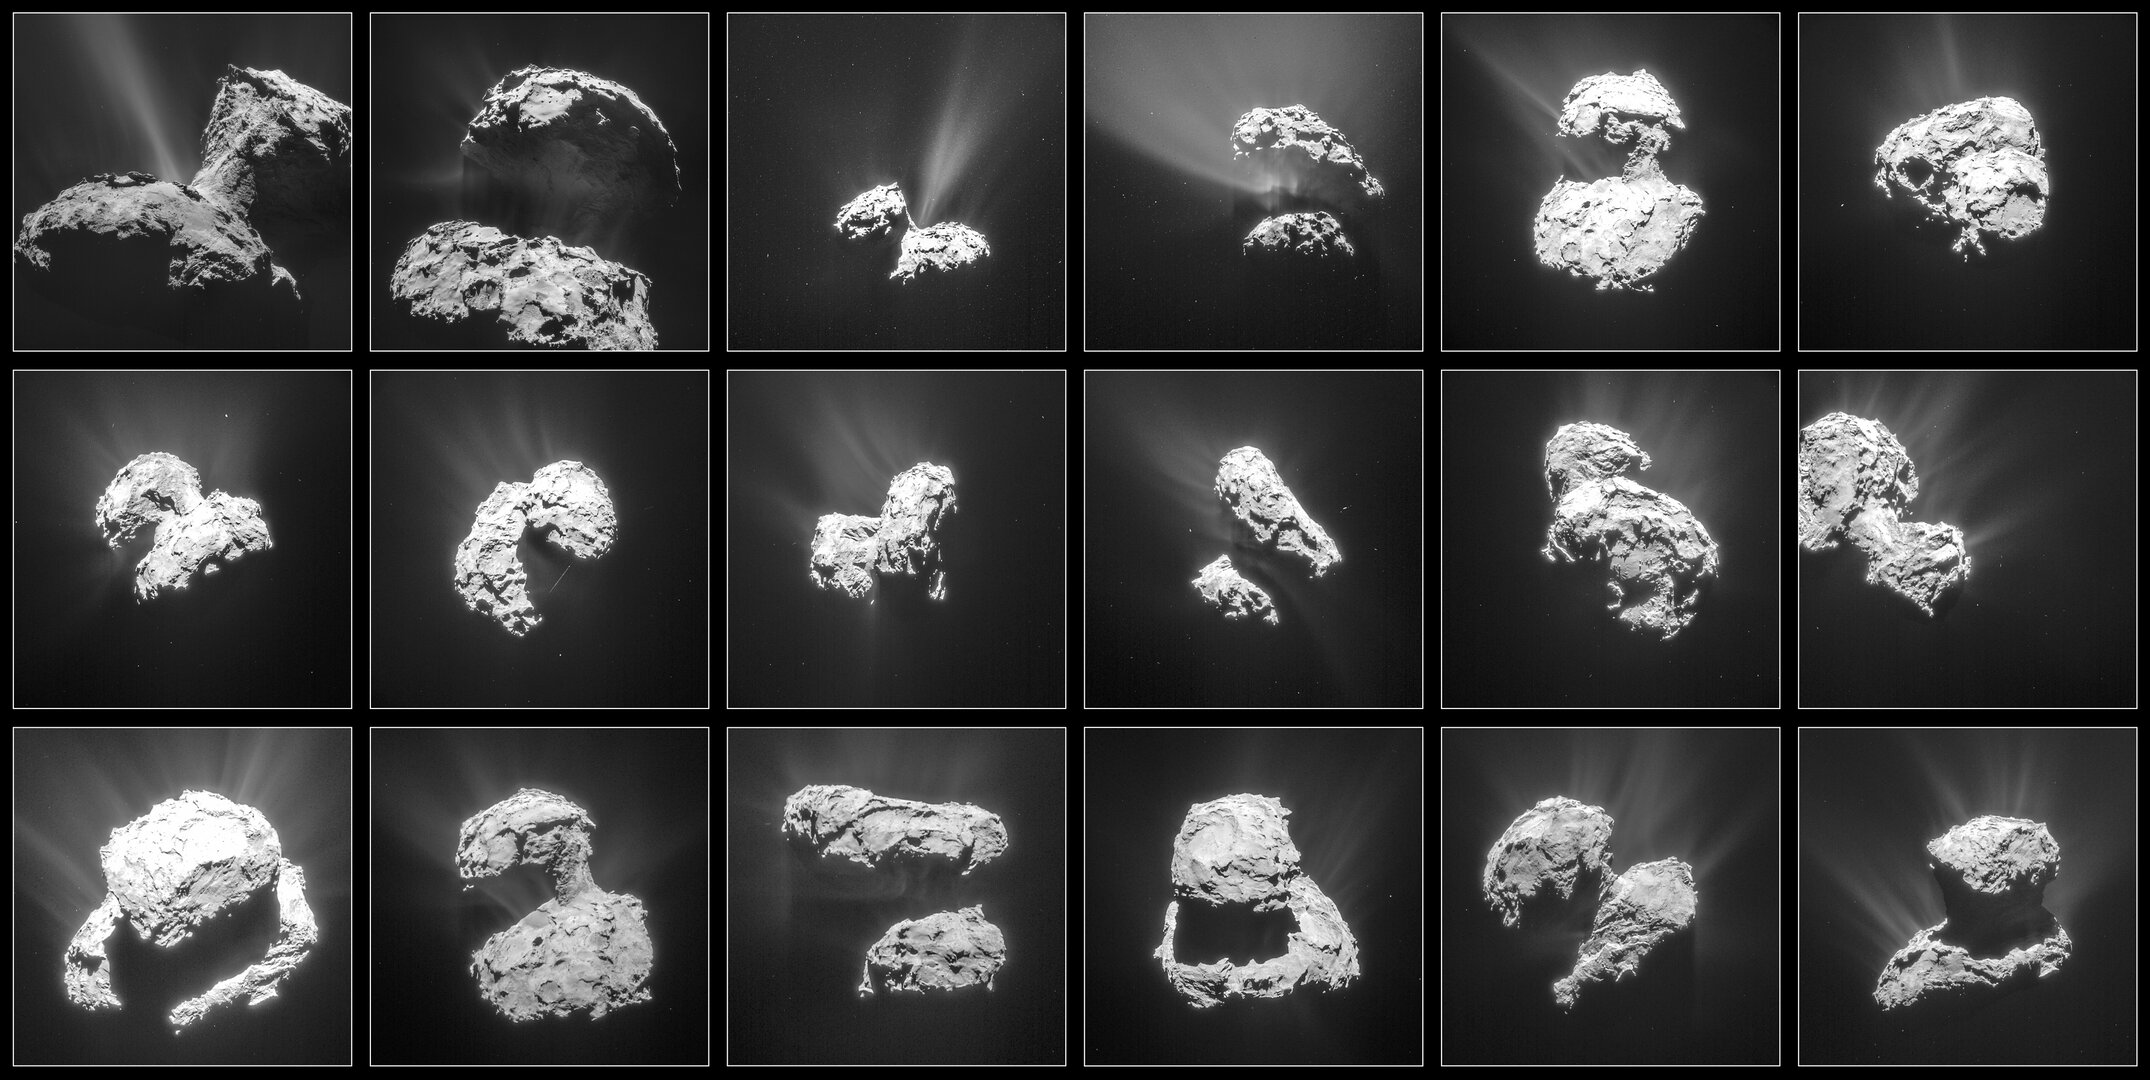 Comet activity